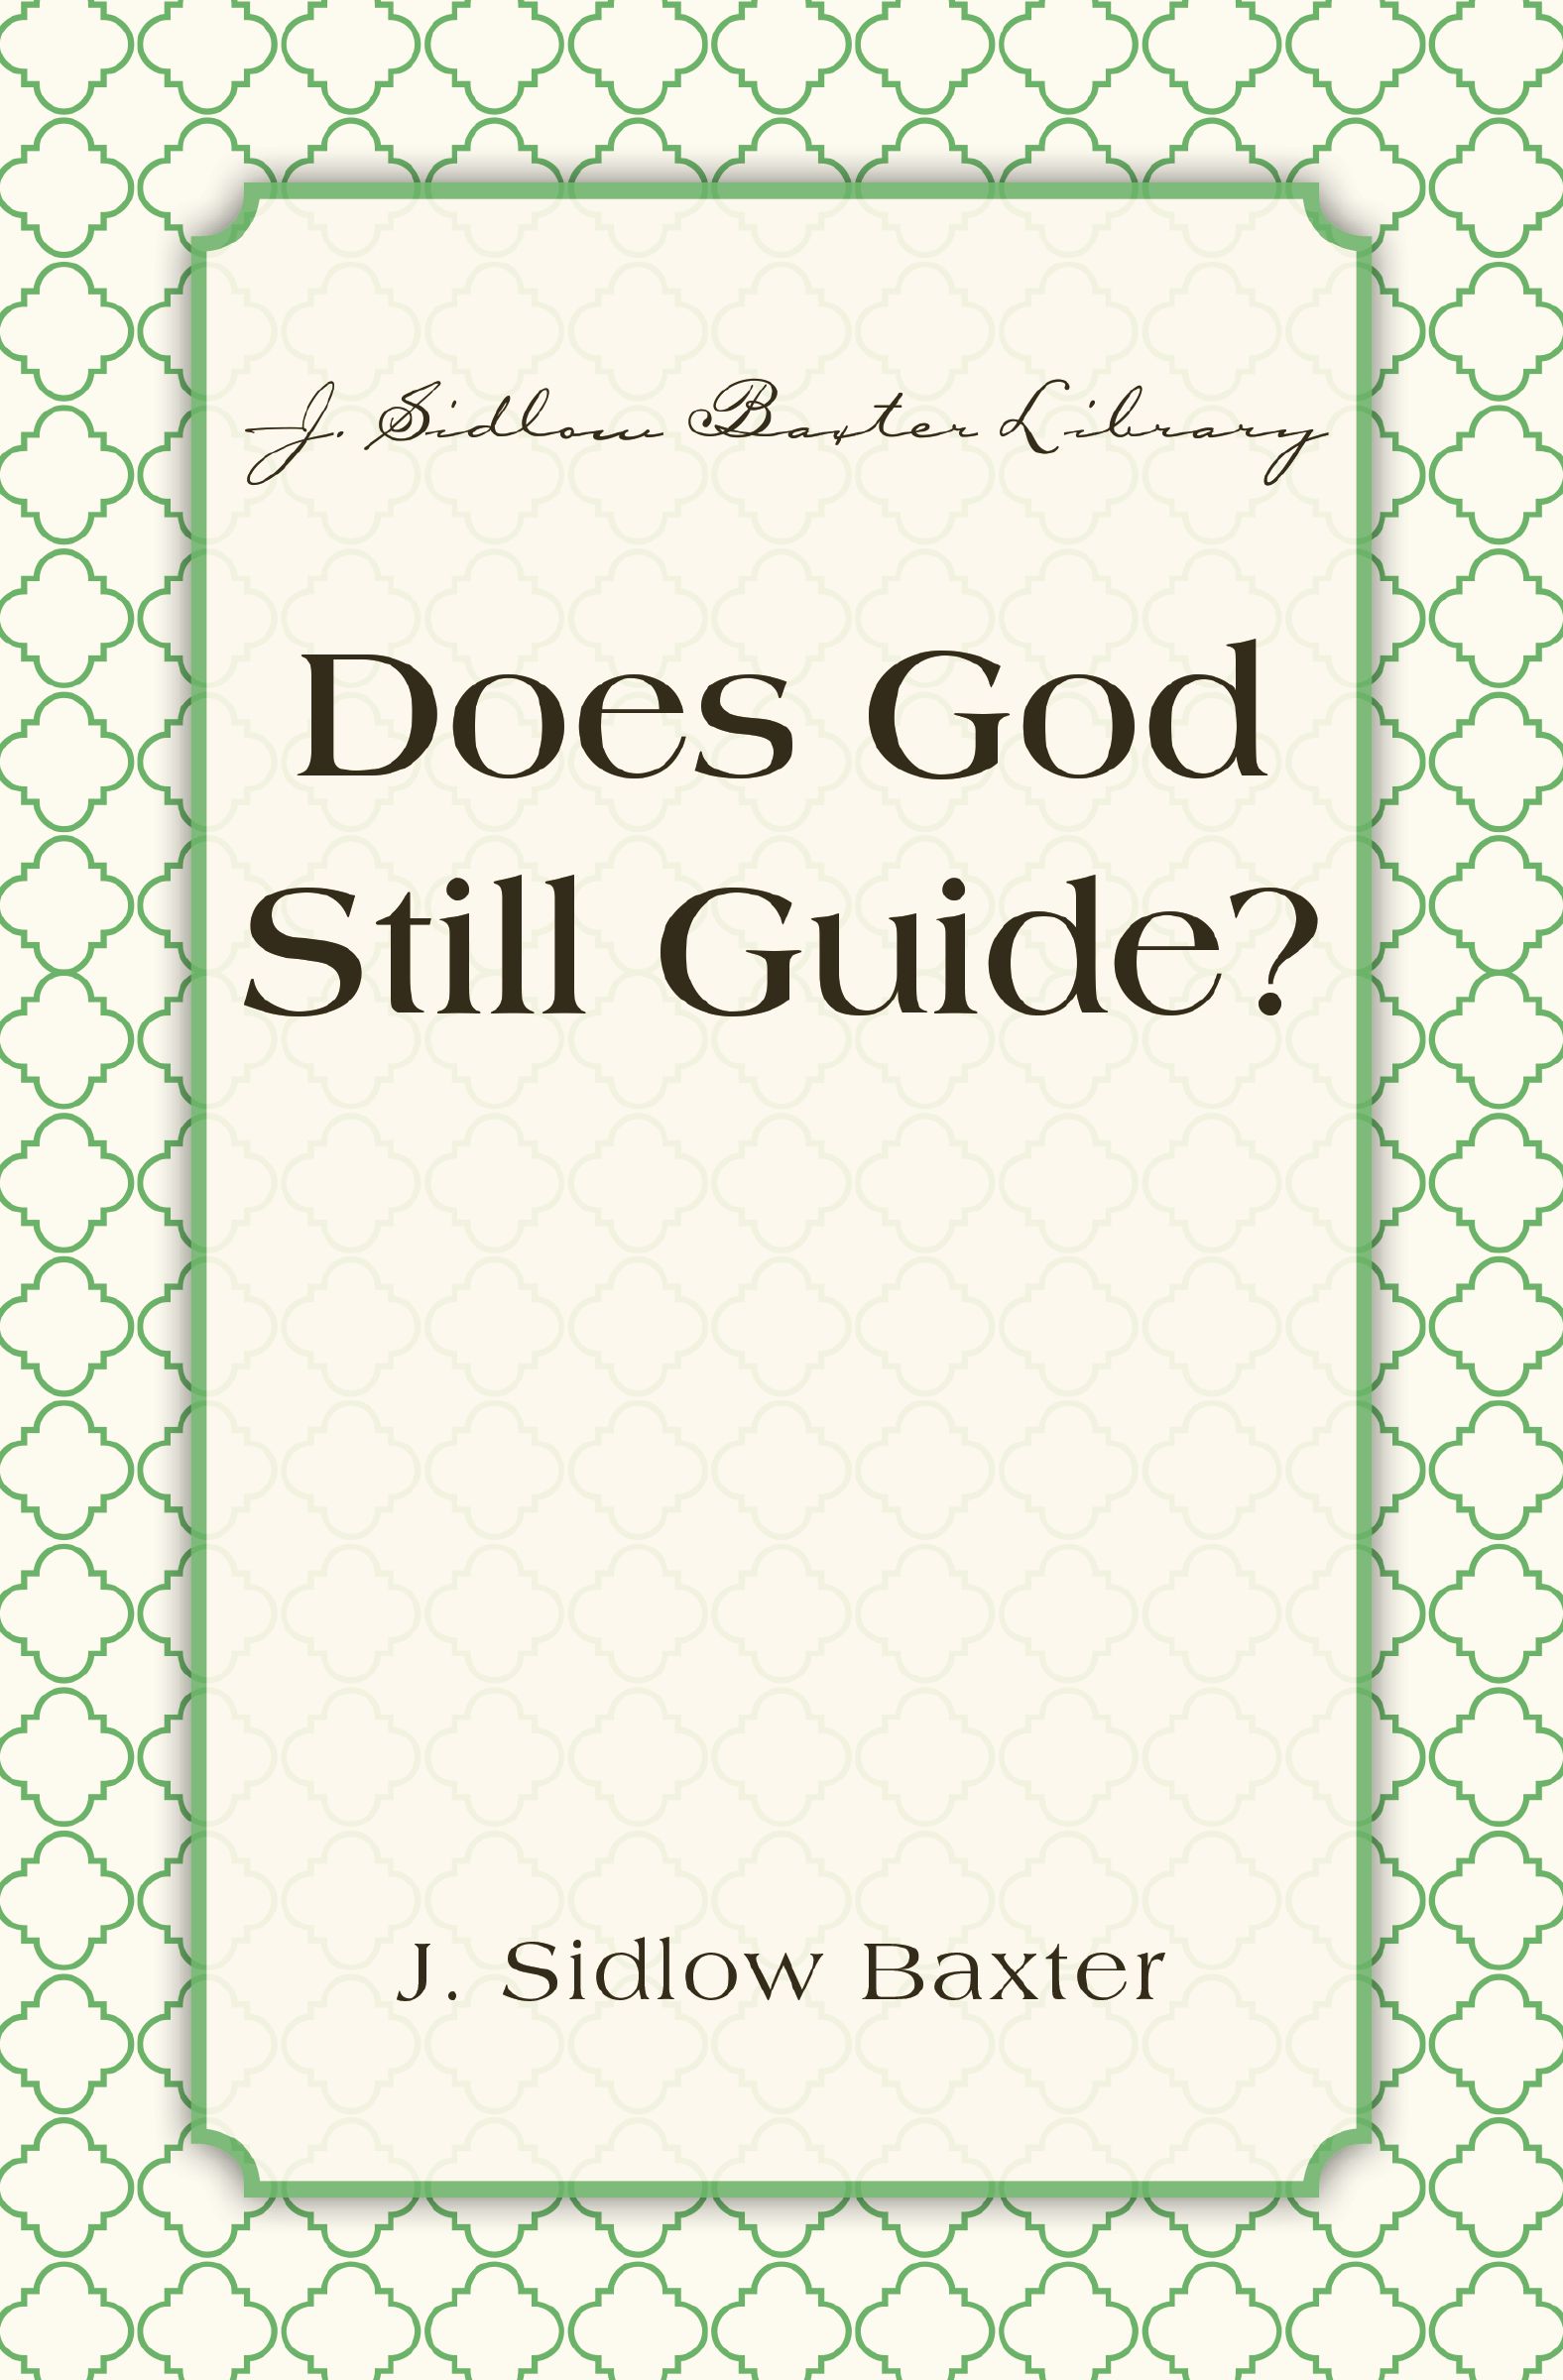 Does God Still Guide?